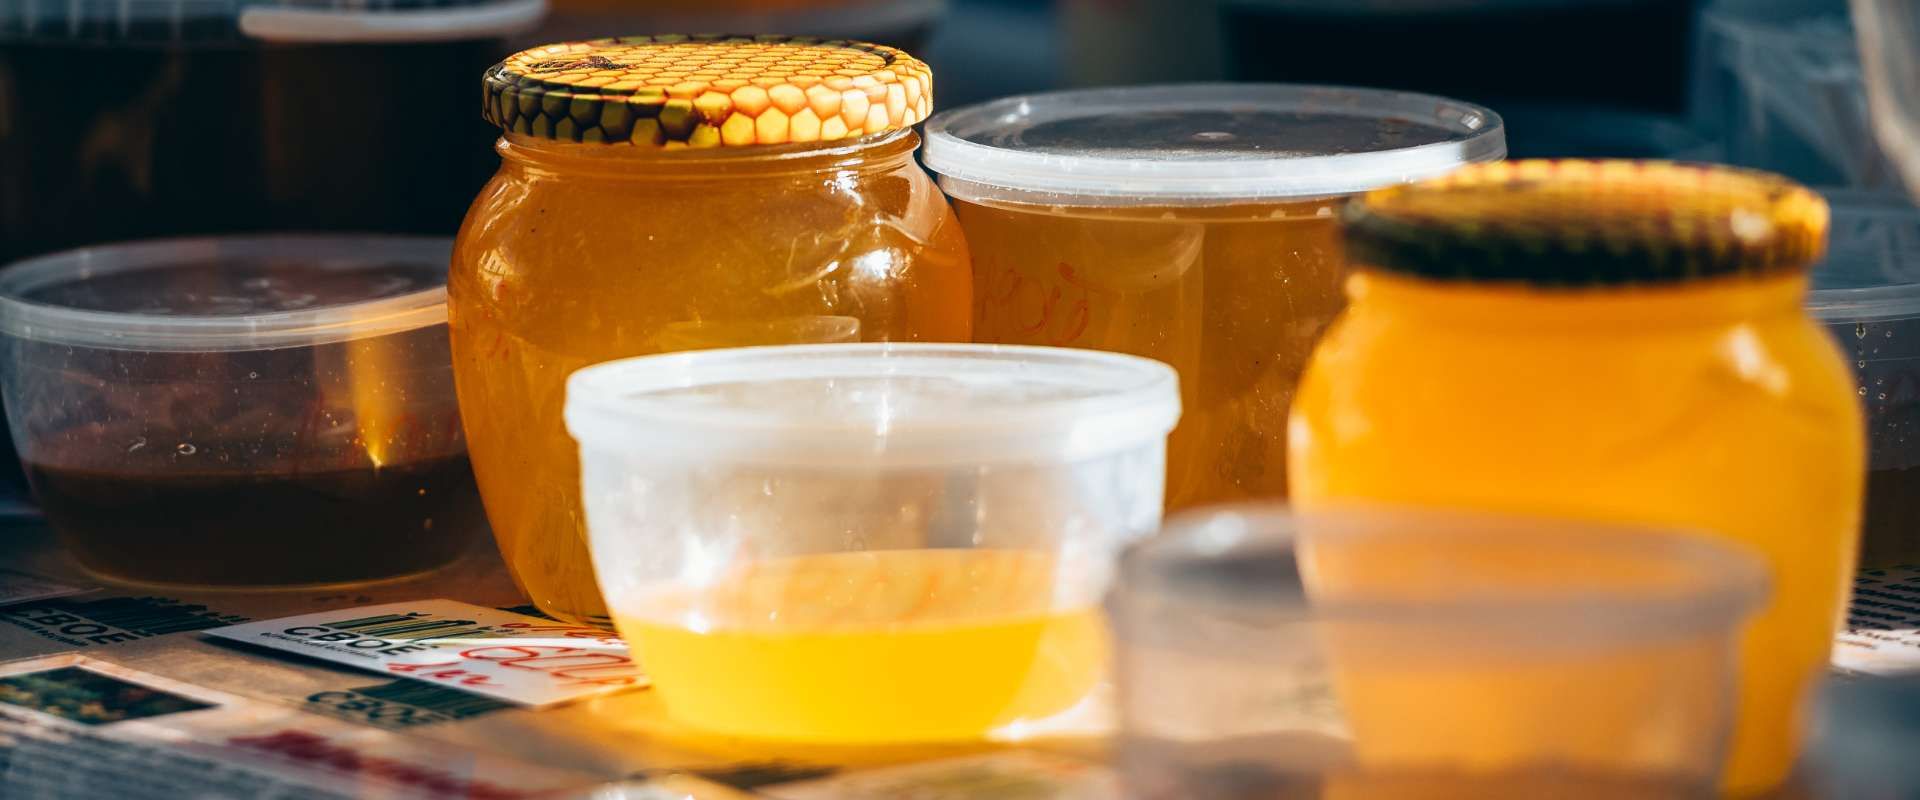 Tarros de vidrio rellenos de miel